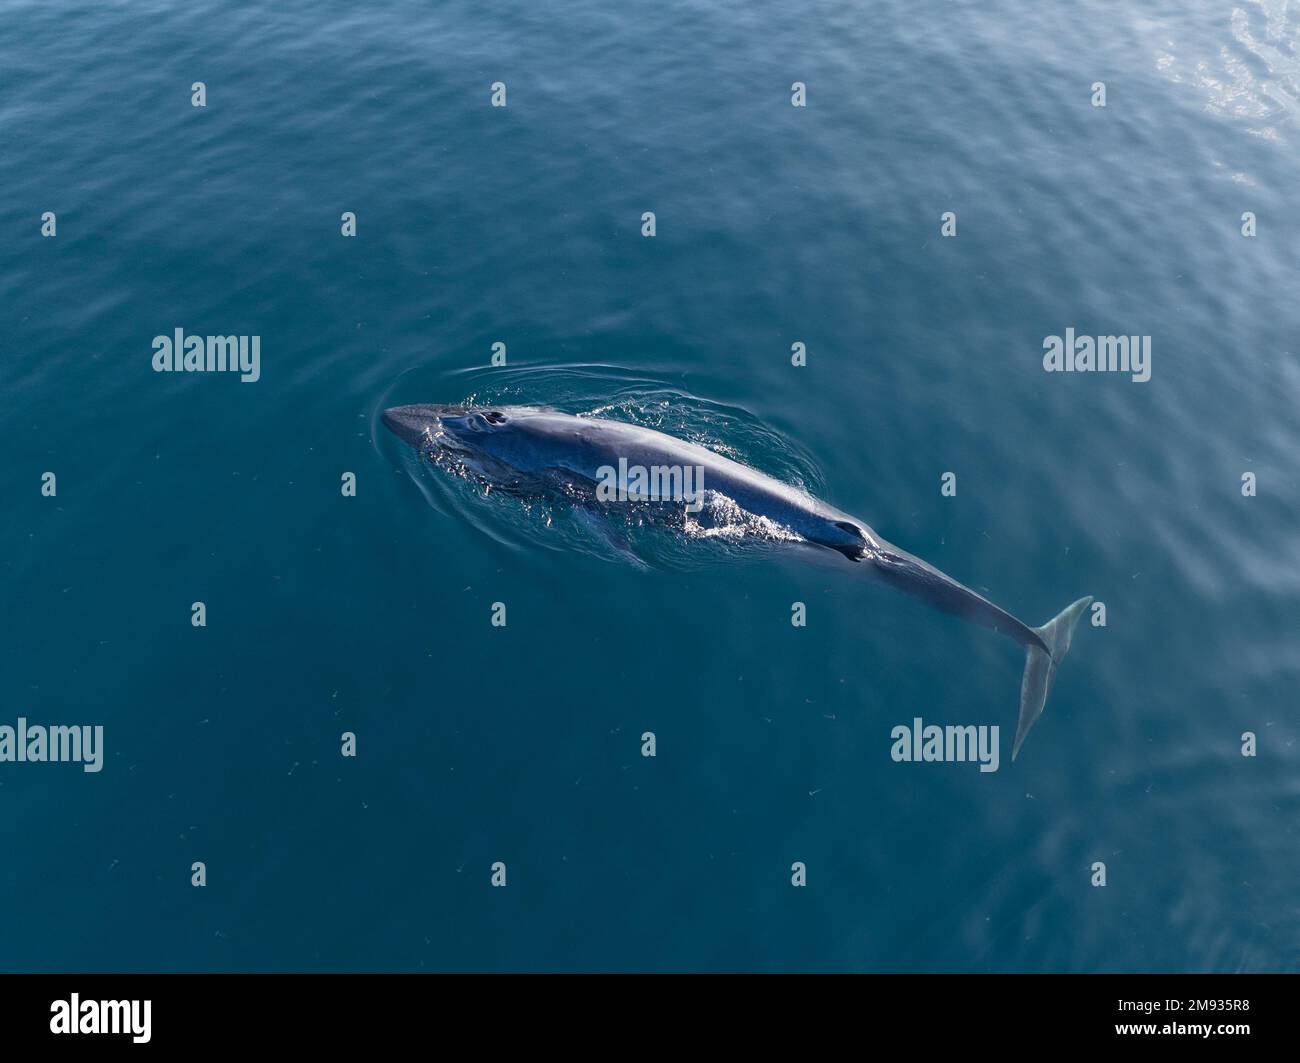 Una ballena de Omura, Balaenoptera omurai, respira en la superficie del Océano Pacífico Sur. Este poco conocido rorqual se alimenta de organismos planctónicos. Foto de stock